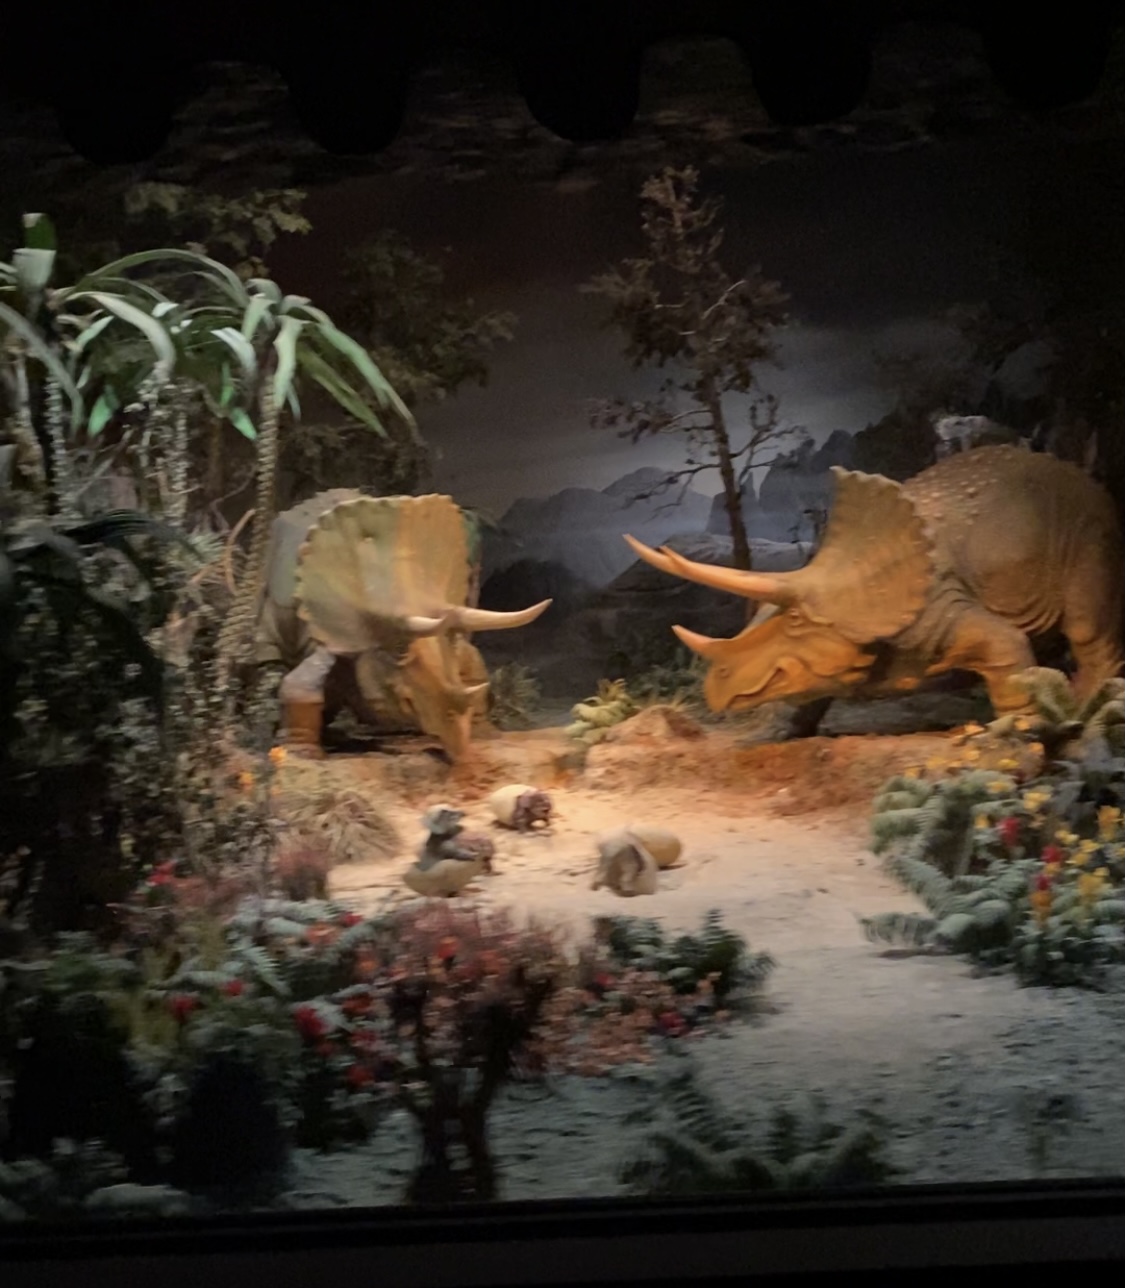 dinosaurs exhibit